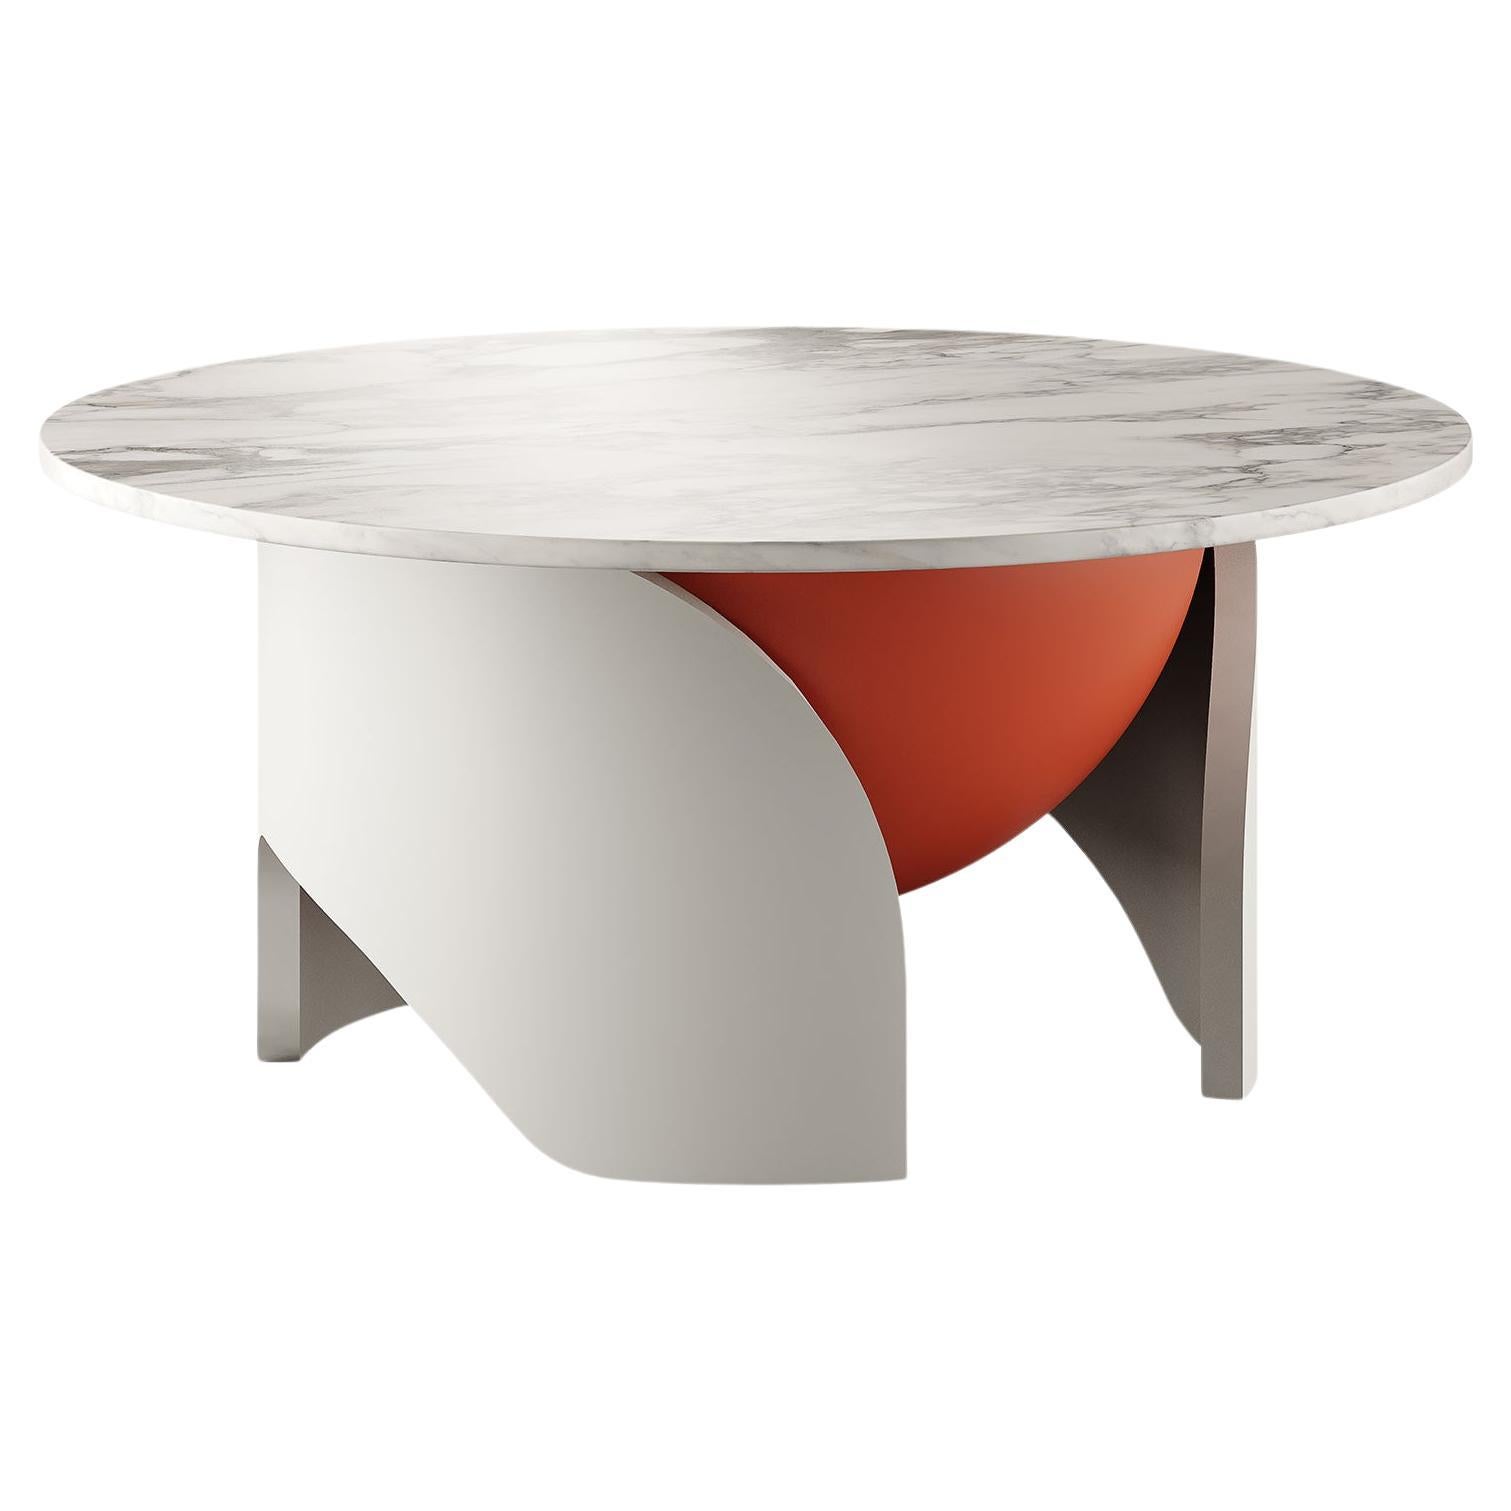 Table centrale ronde moderne Calacatta plateau en marbre blanc laqué gris et orange mat